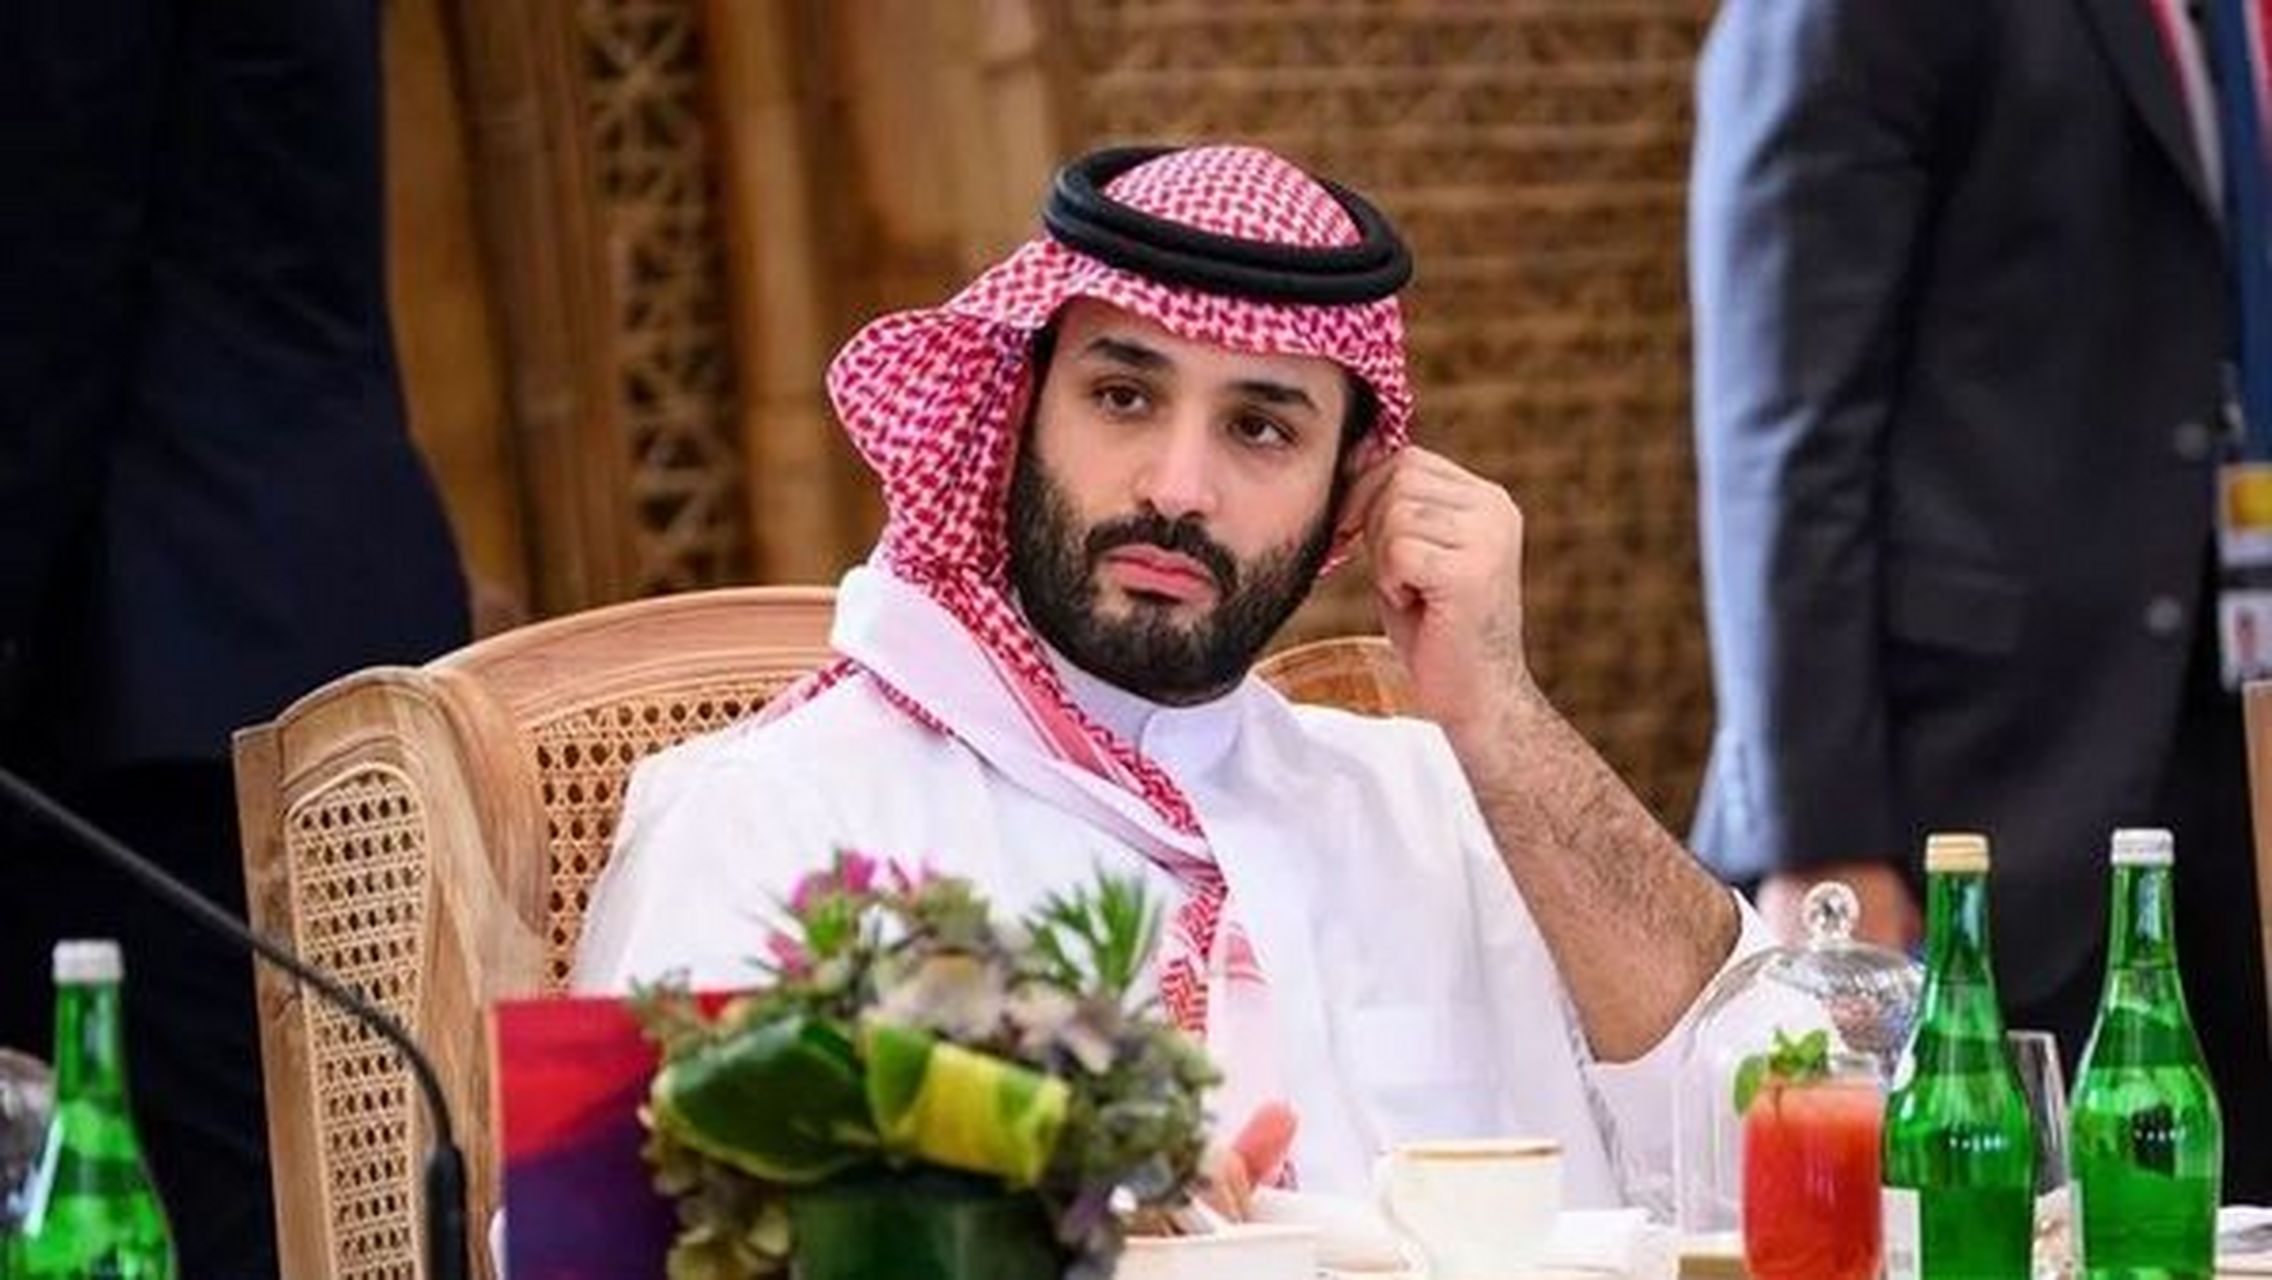 【opec 宣布进一步减产,沙特王储萨勒曼曾说对取悦美国不再感兴趣】